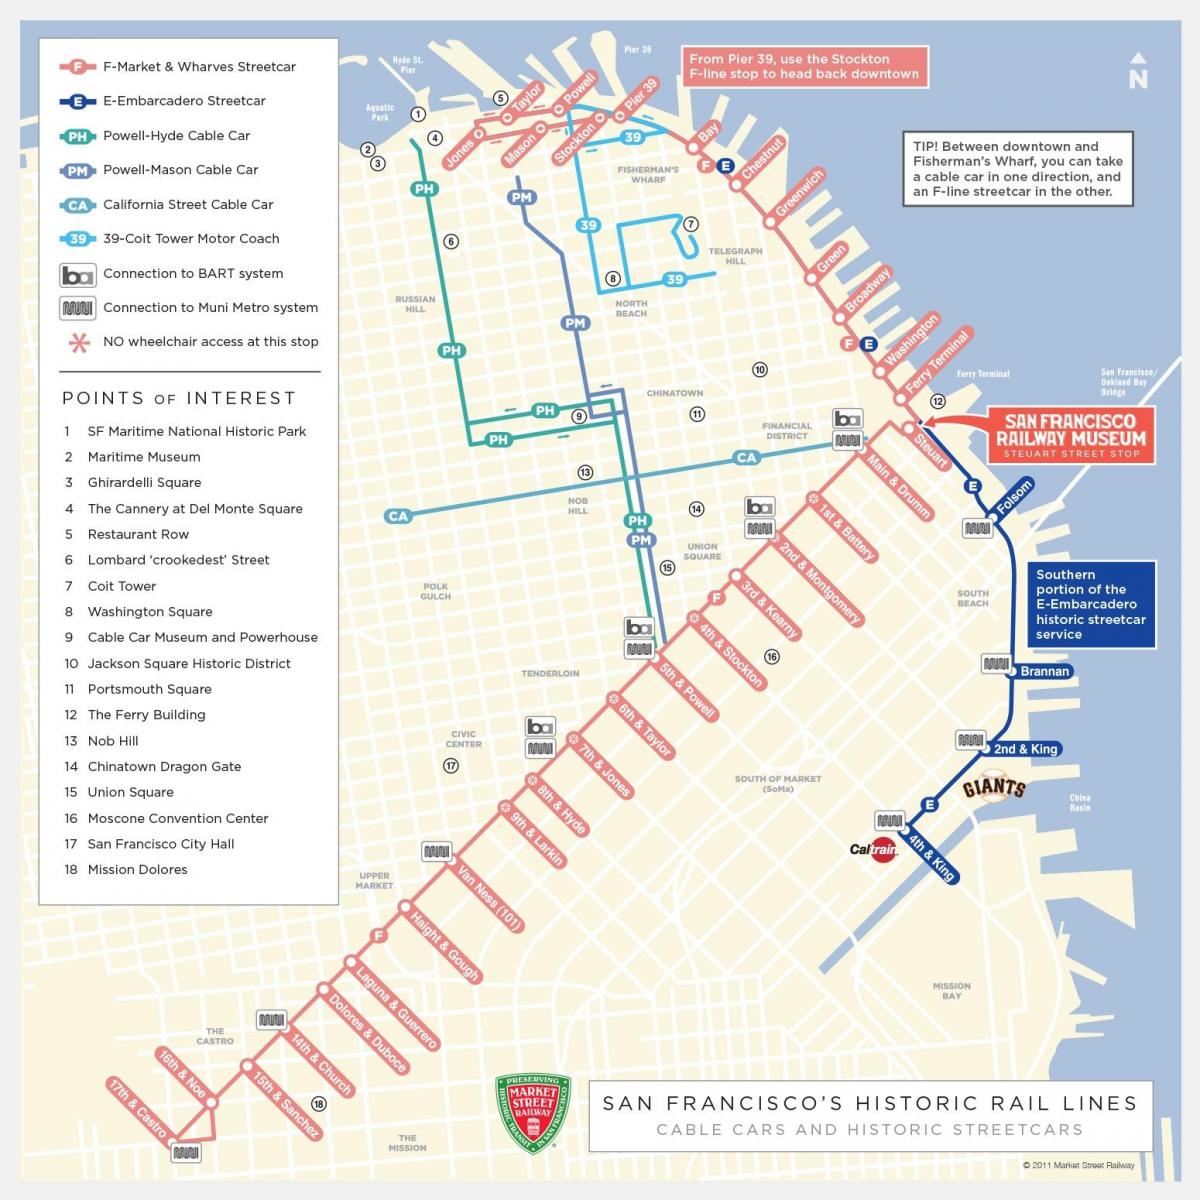 Χάρτης της San Francisco πληροφορίες